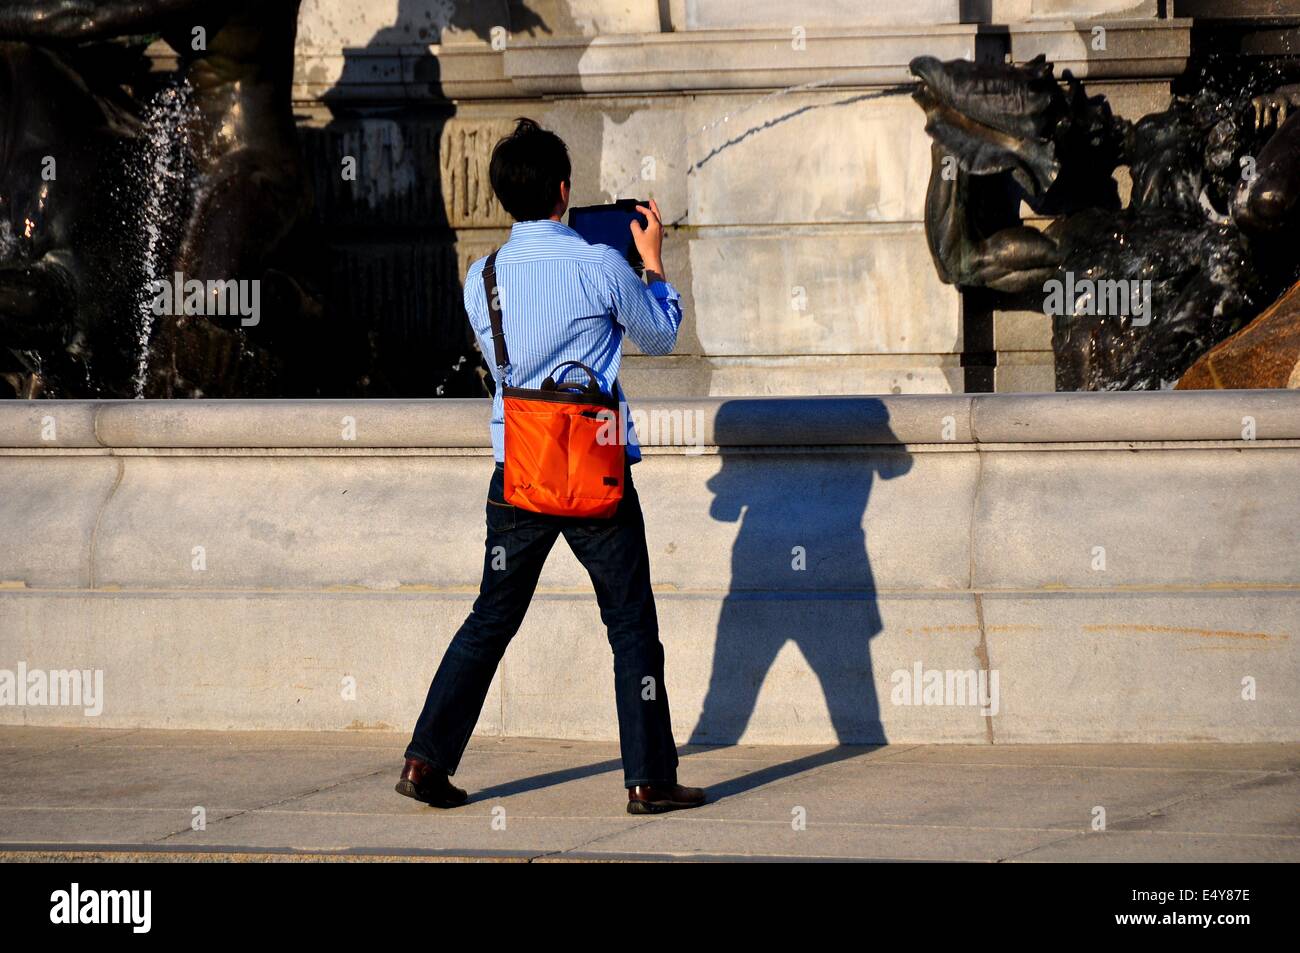 Washington, DC: Asian tourist usando un tampone scatta una fotografia della fontana di Nettuno davanti alla Biblioteca del Congresso * Foto Stock